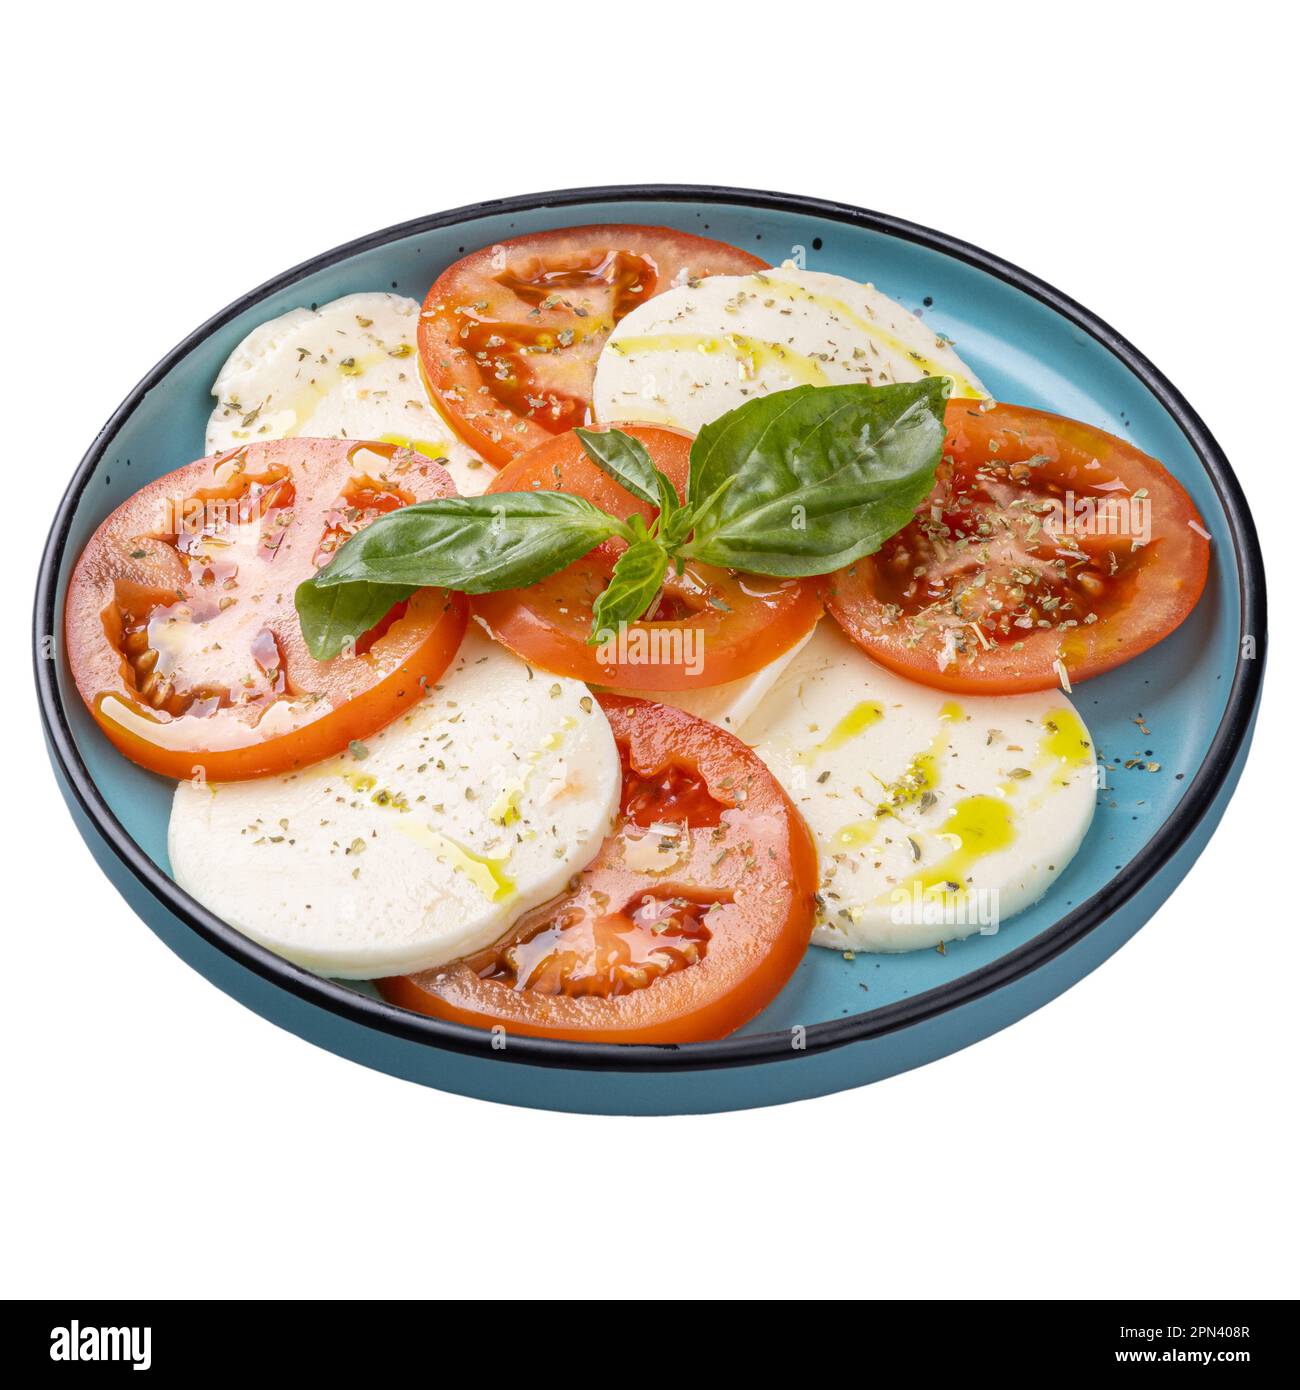 Menu di insalate del ristorante, insalata caprese con mozzarella, pomodori e basilico Foto Stock